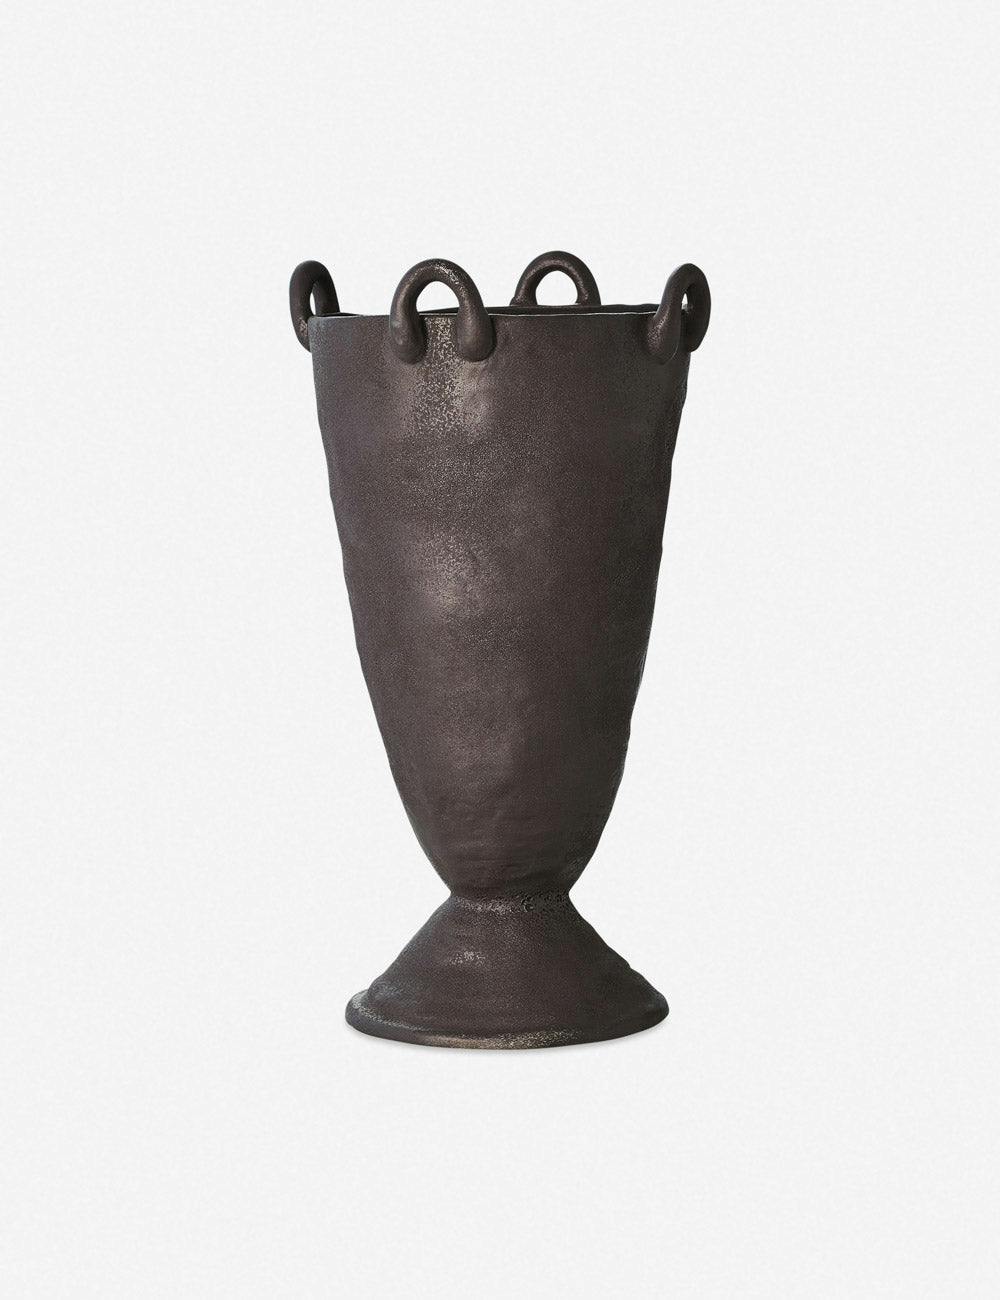 Louis Decorative Vase by Lemieux et Cie - Black